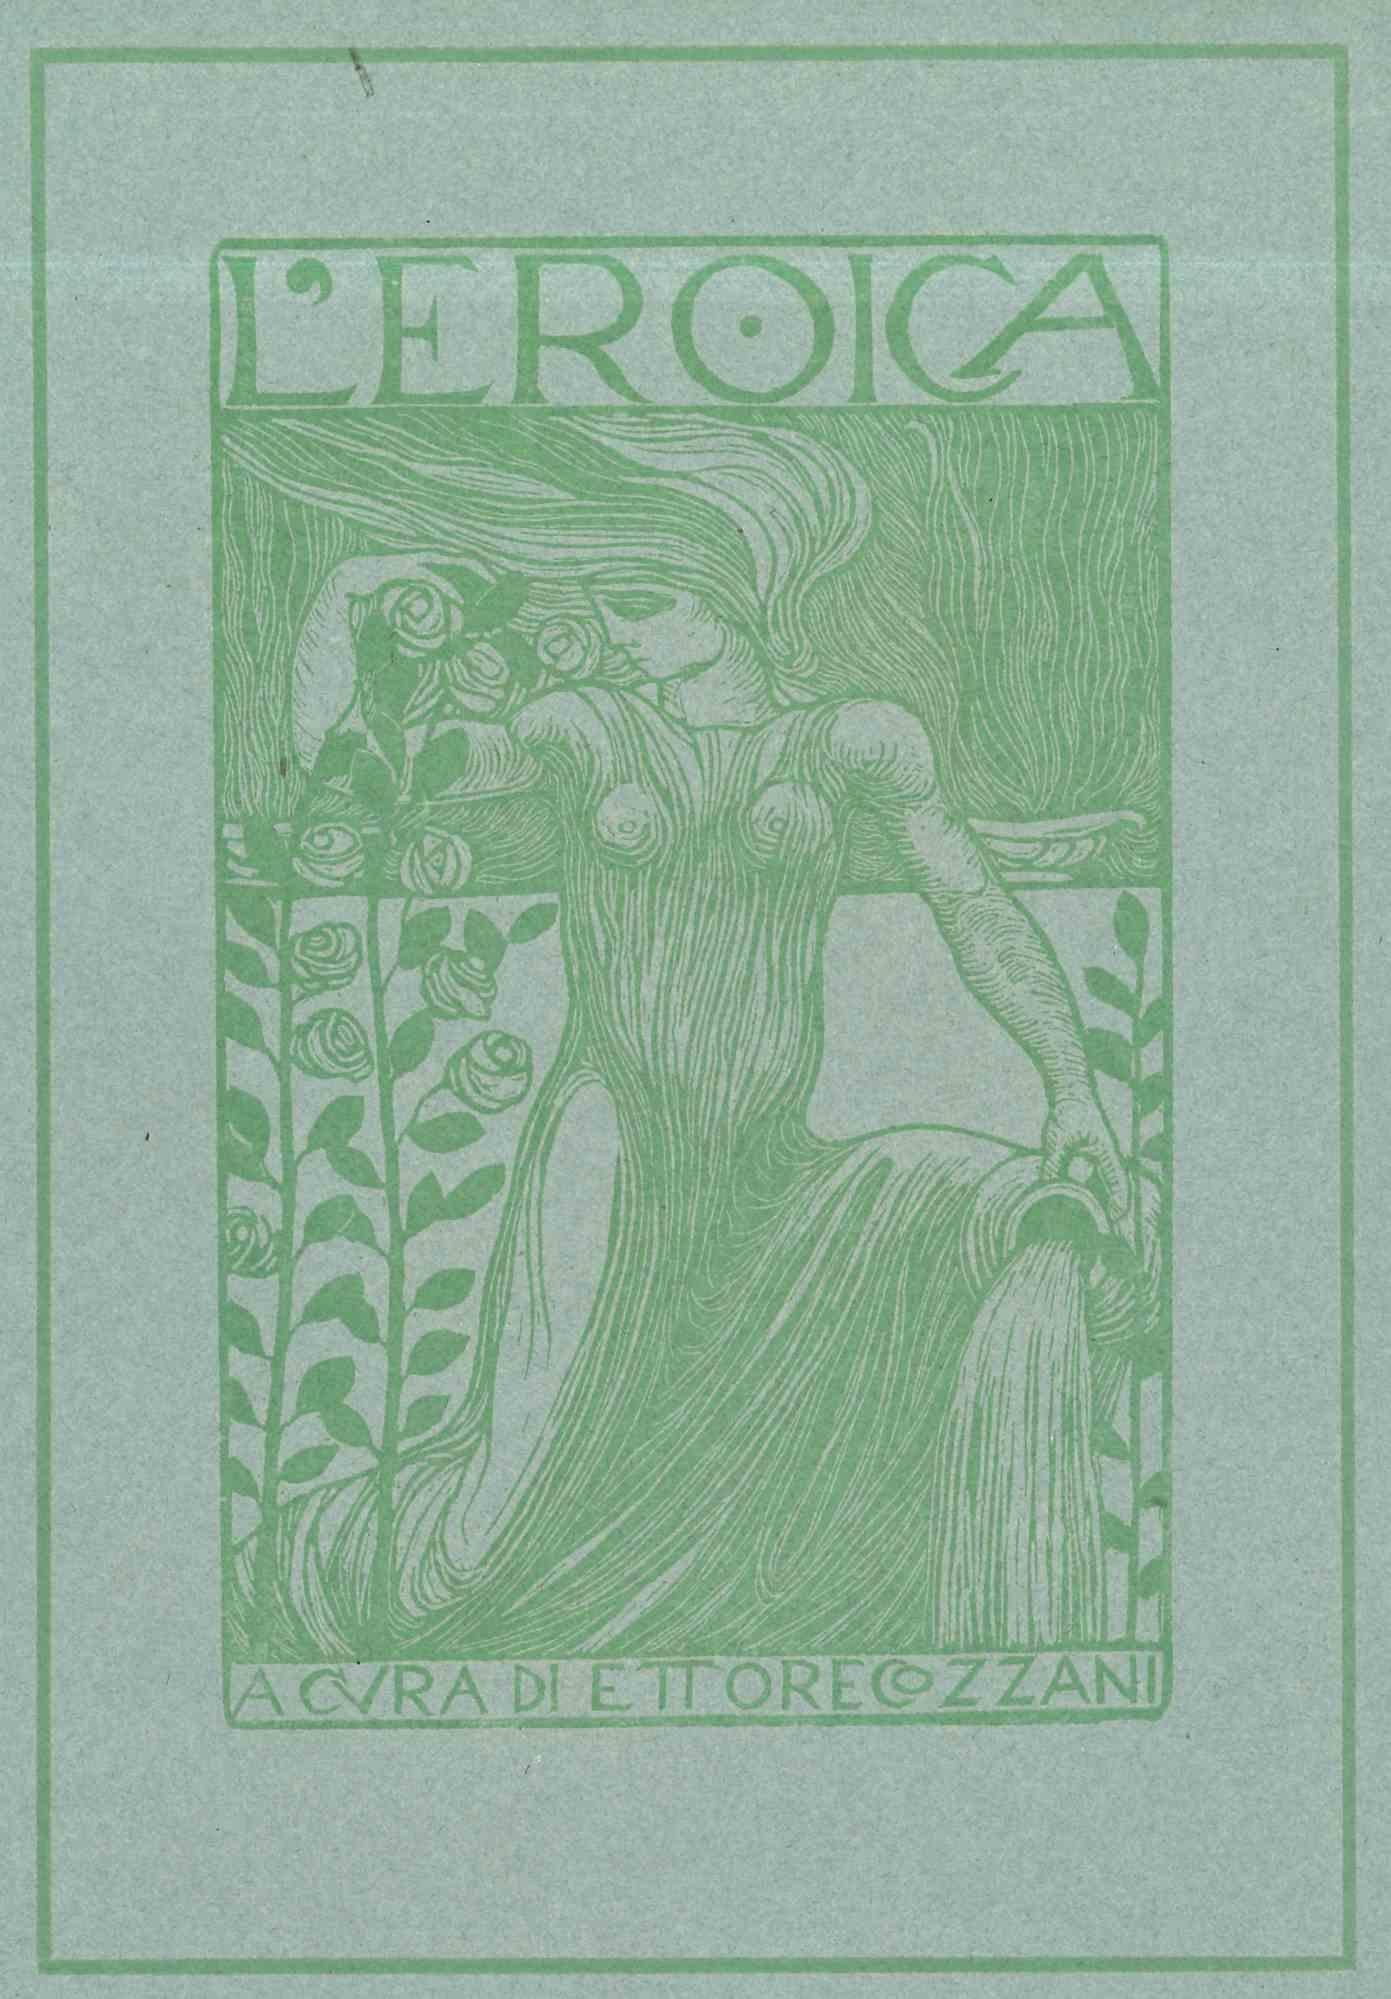 Unknown Figurative Print - Cover for L'Eroica - Woodcut by Ettore di Giorgio - Early 20th Century